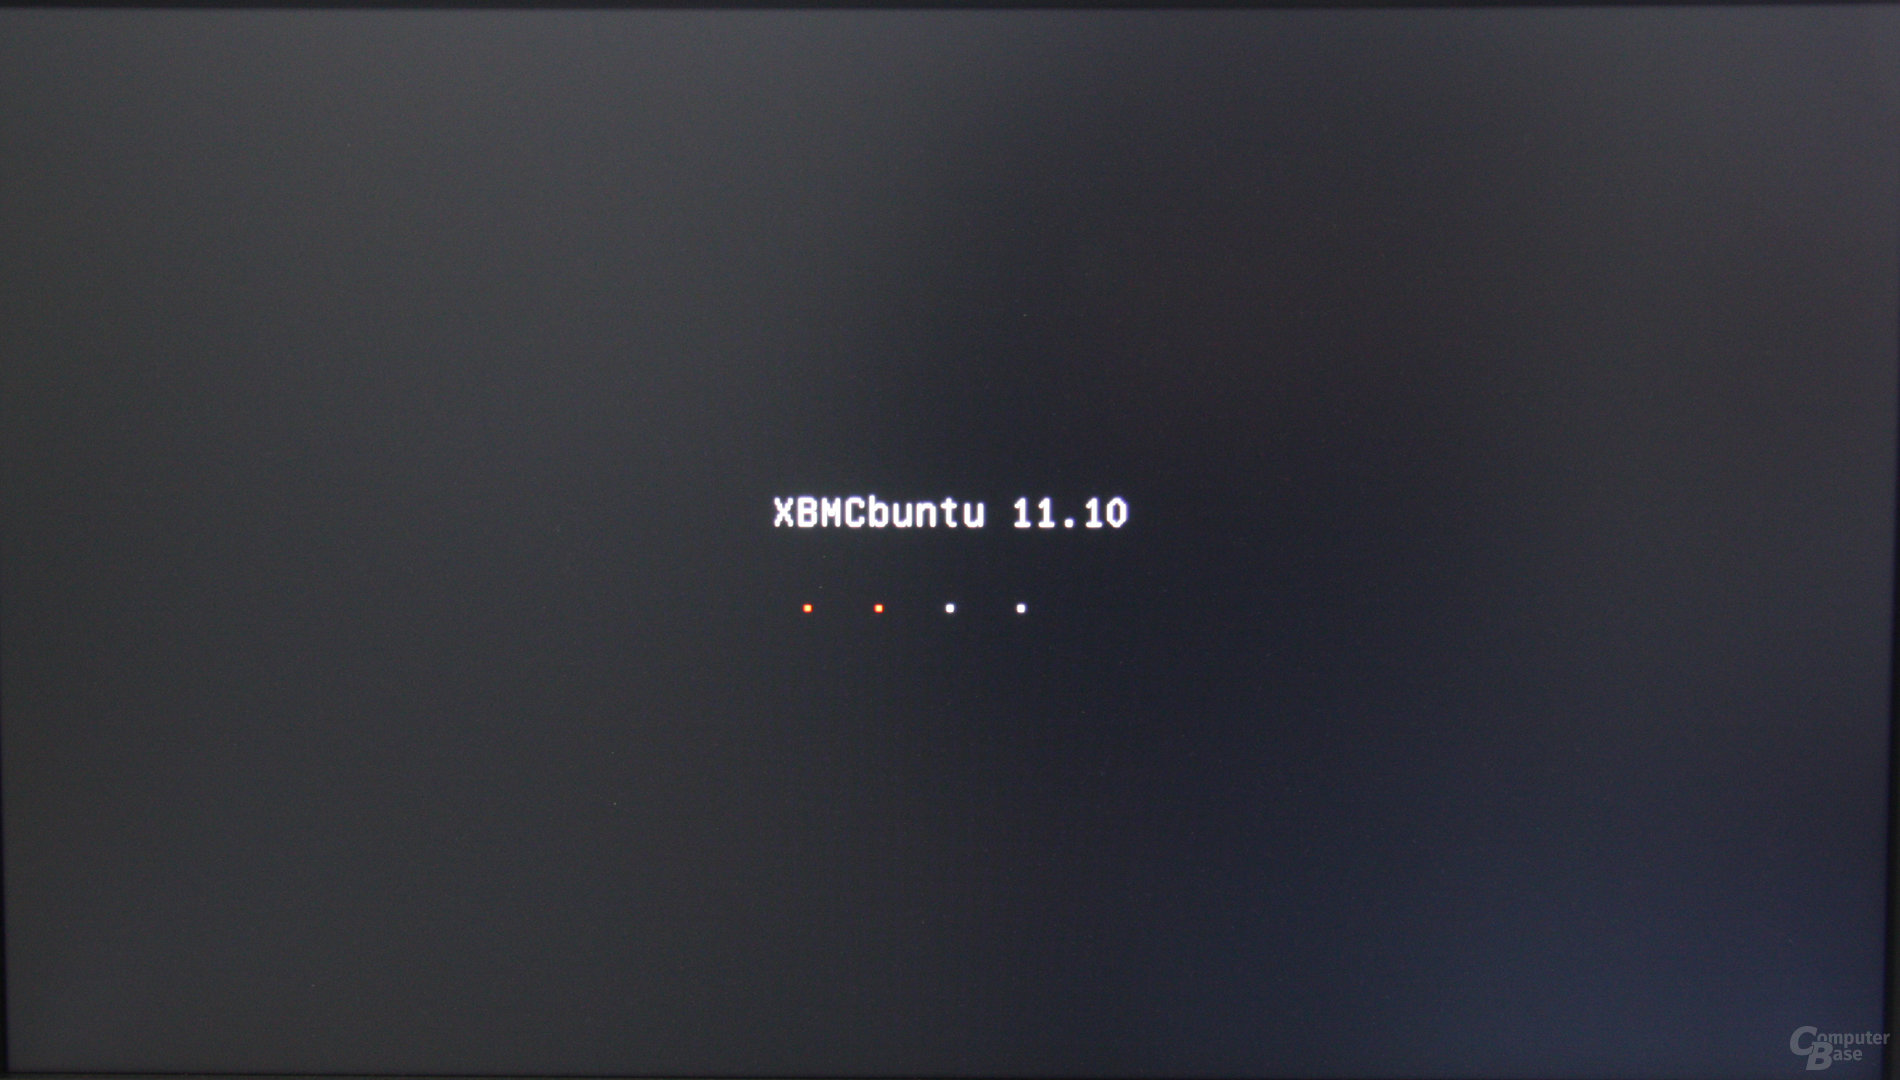 XBMCbuntu auf der Zbox nano XS AD11 Plus